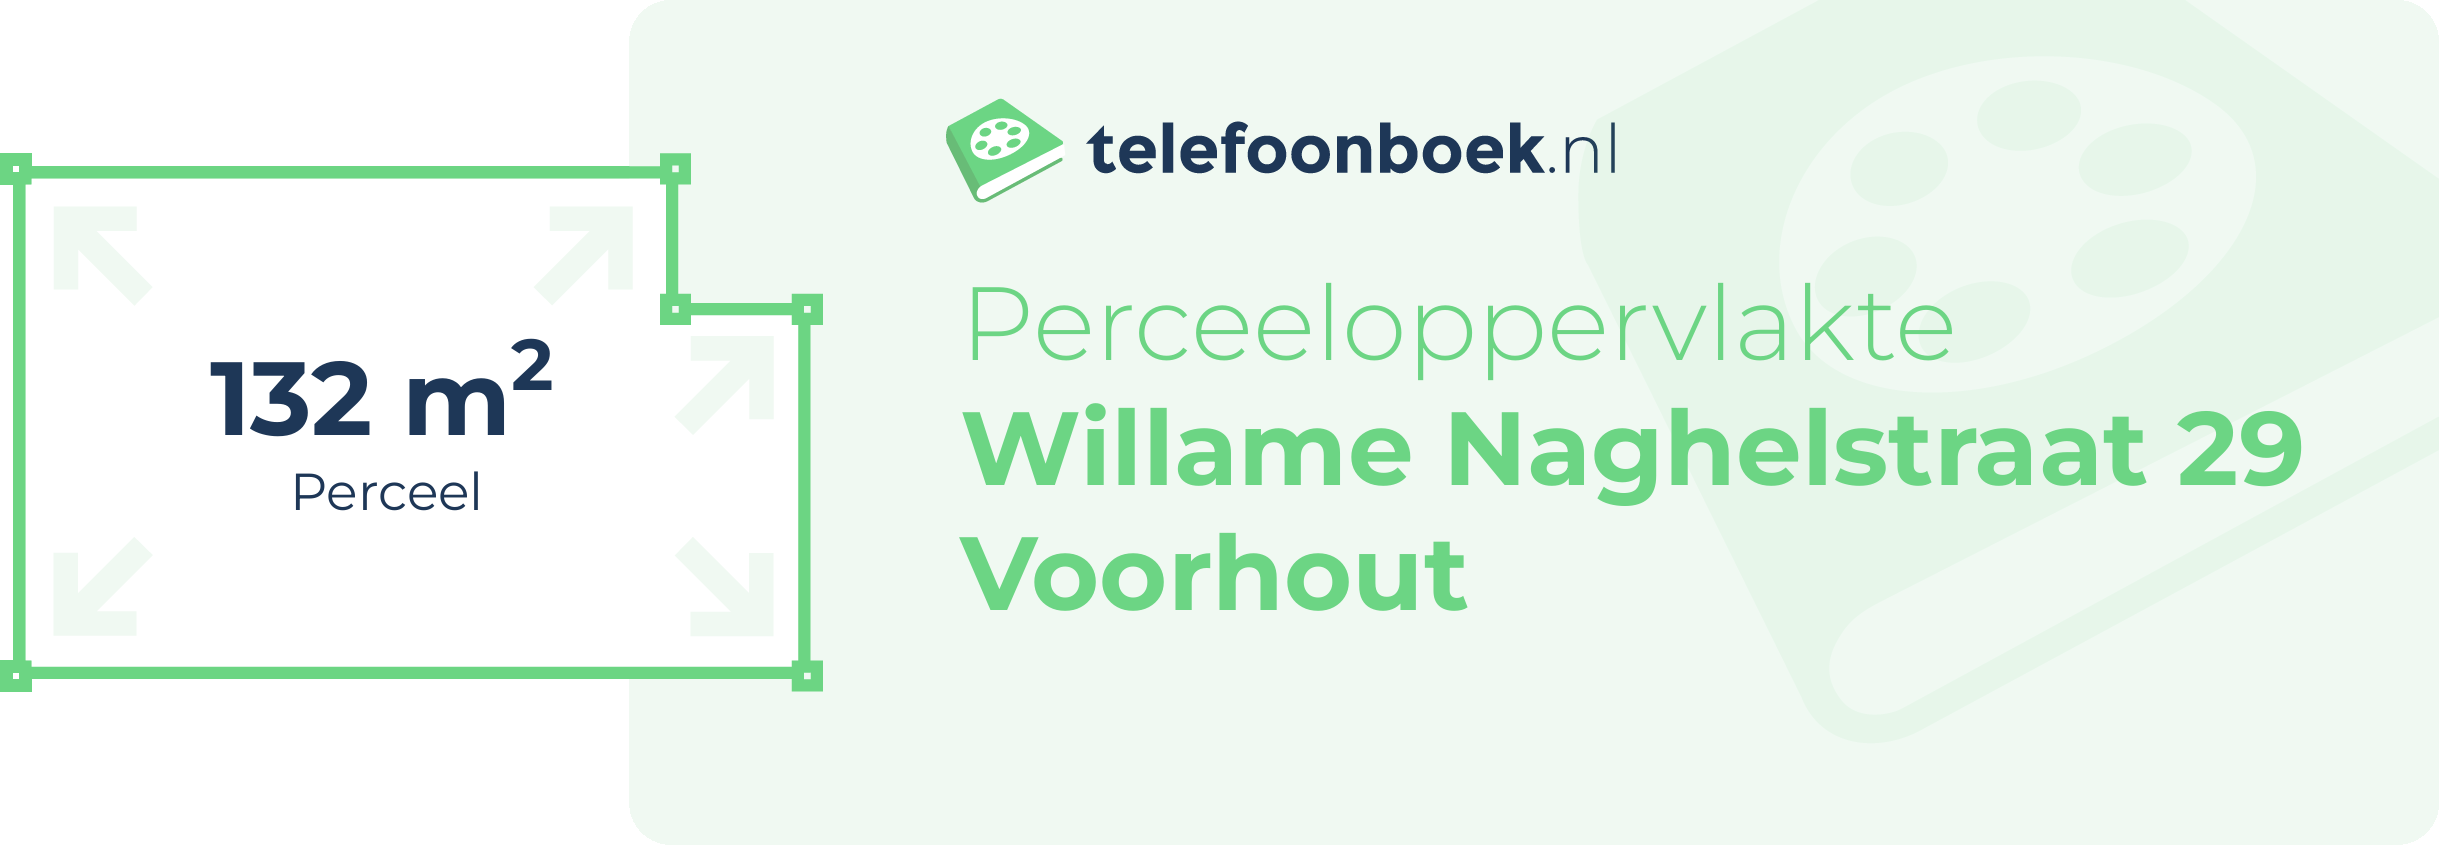 Perceeloppervlakte Willame Naghelstraat 29 Voorhout